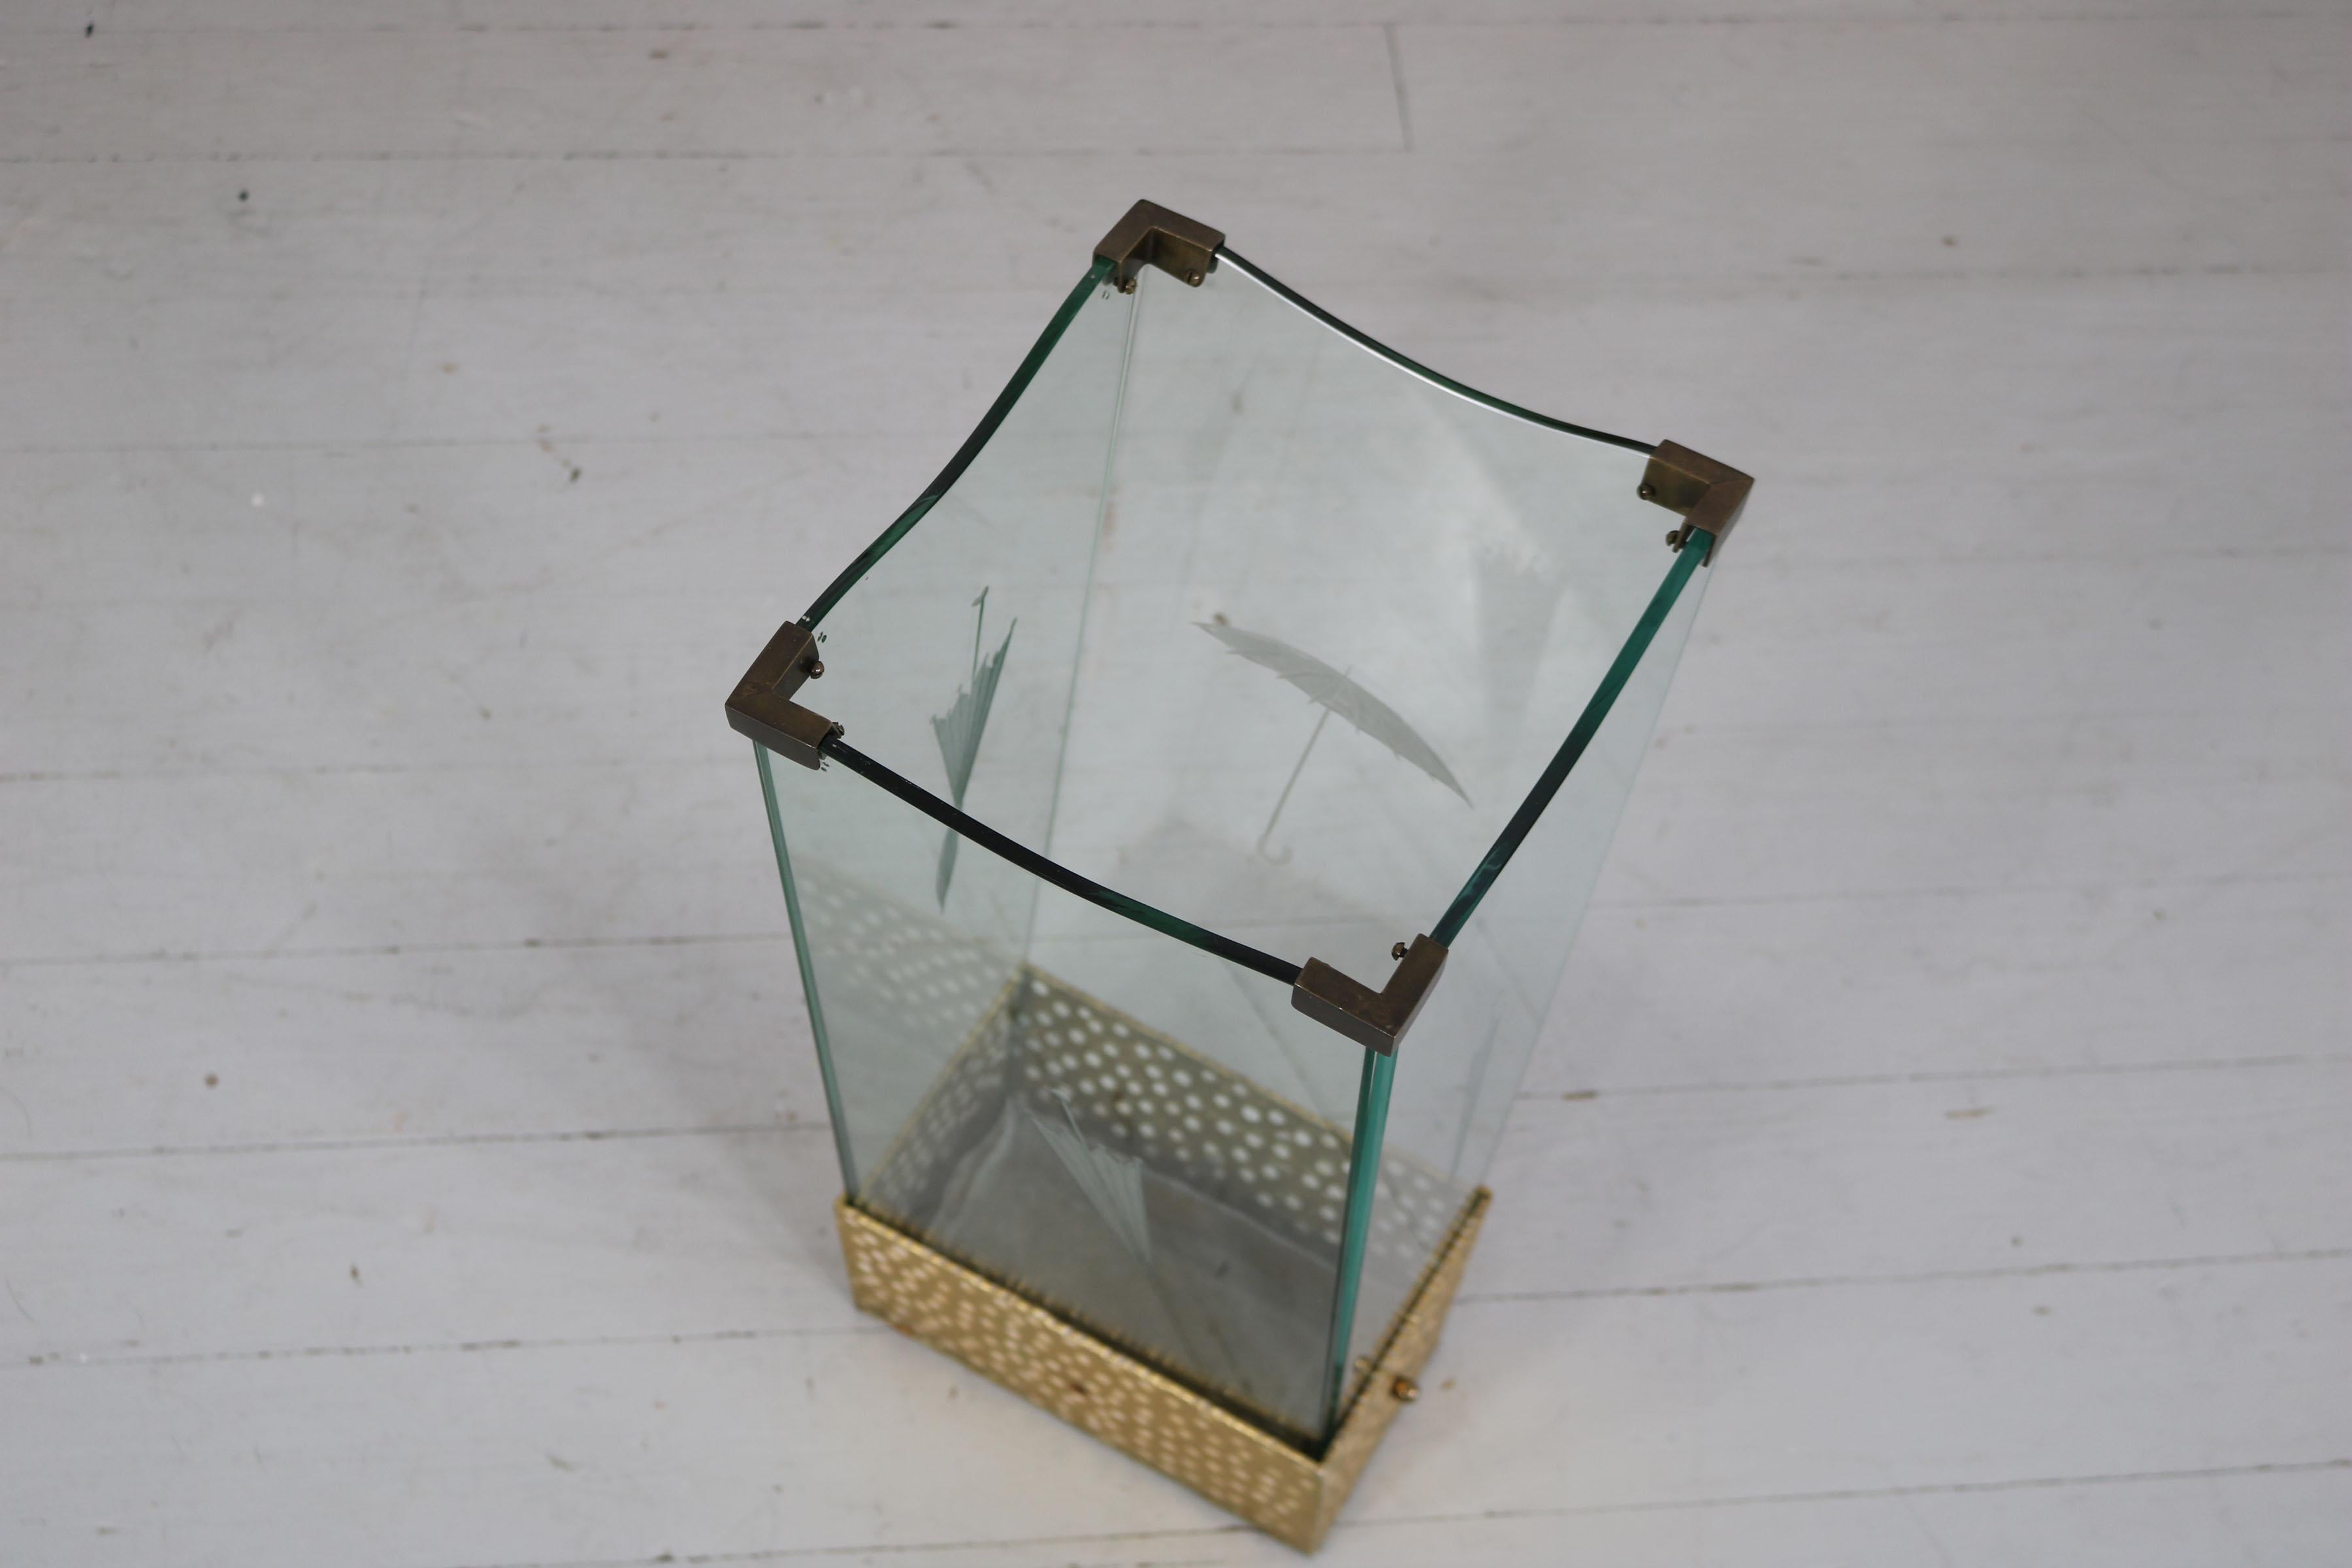 Schirmständer aus geätztem Glas und Messing, zugeschrieben Pier Luigi Colli.
Der Metallkasten an der Unterseite kann zum Entleeren des Wassers herausgezogen werden. 